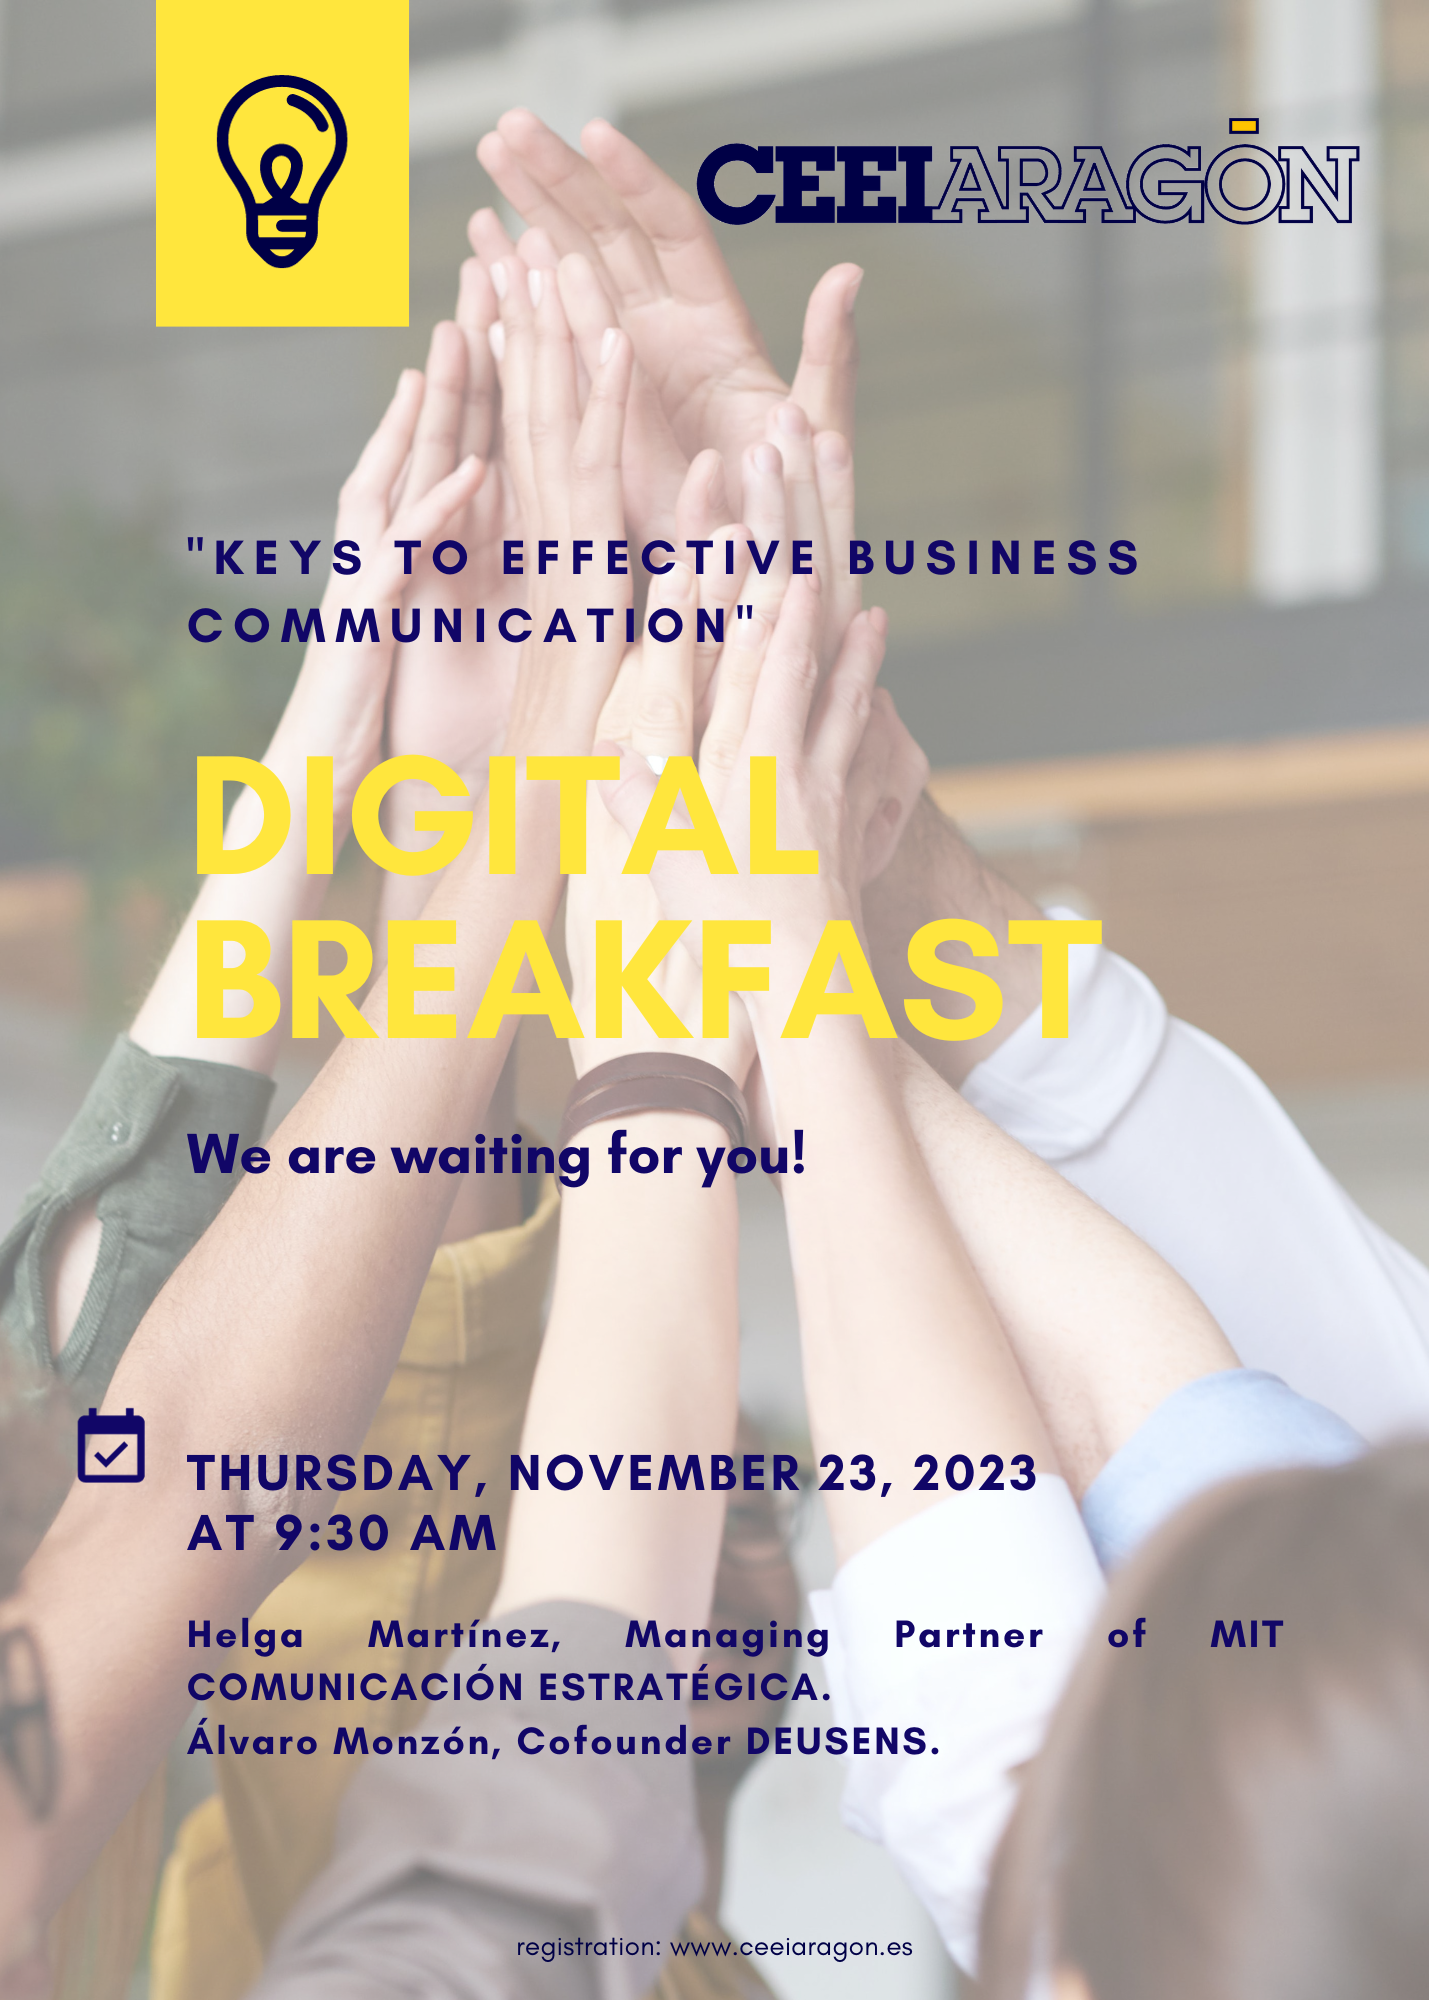 CEEI Digital Breakfast “Keys to effective business communication”